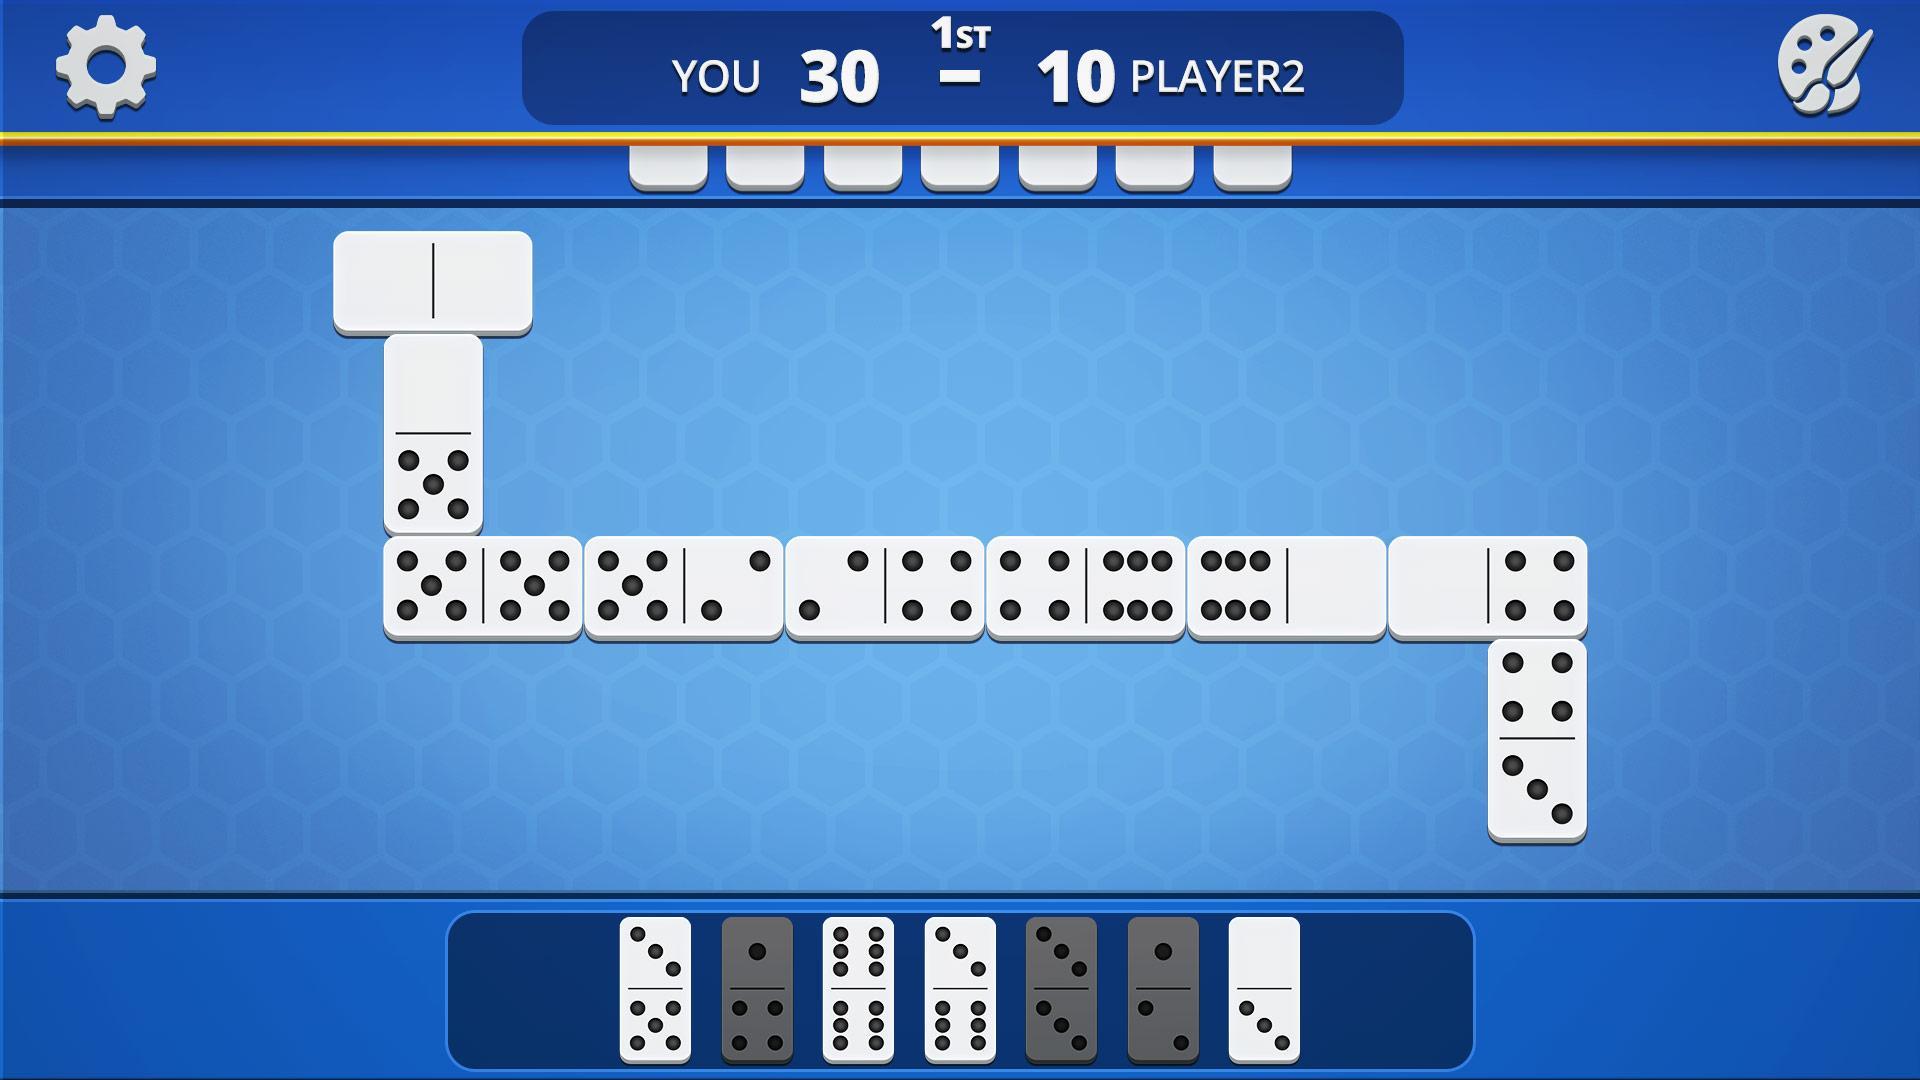 Dominoes Classic Domino Tile Based Game 1.2.5 Screenshot 6